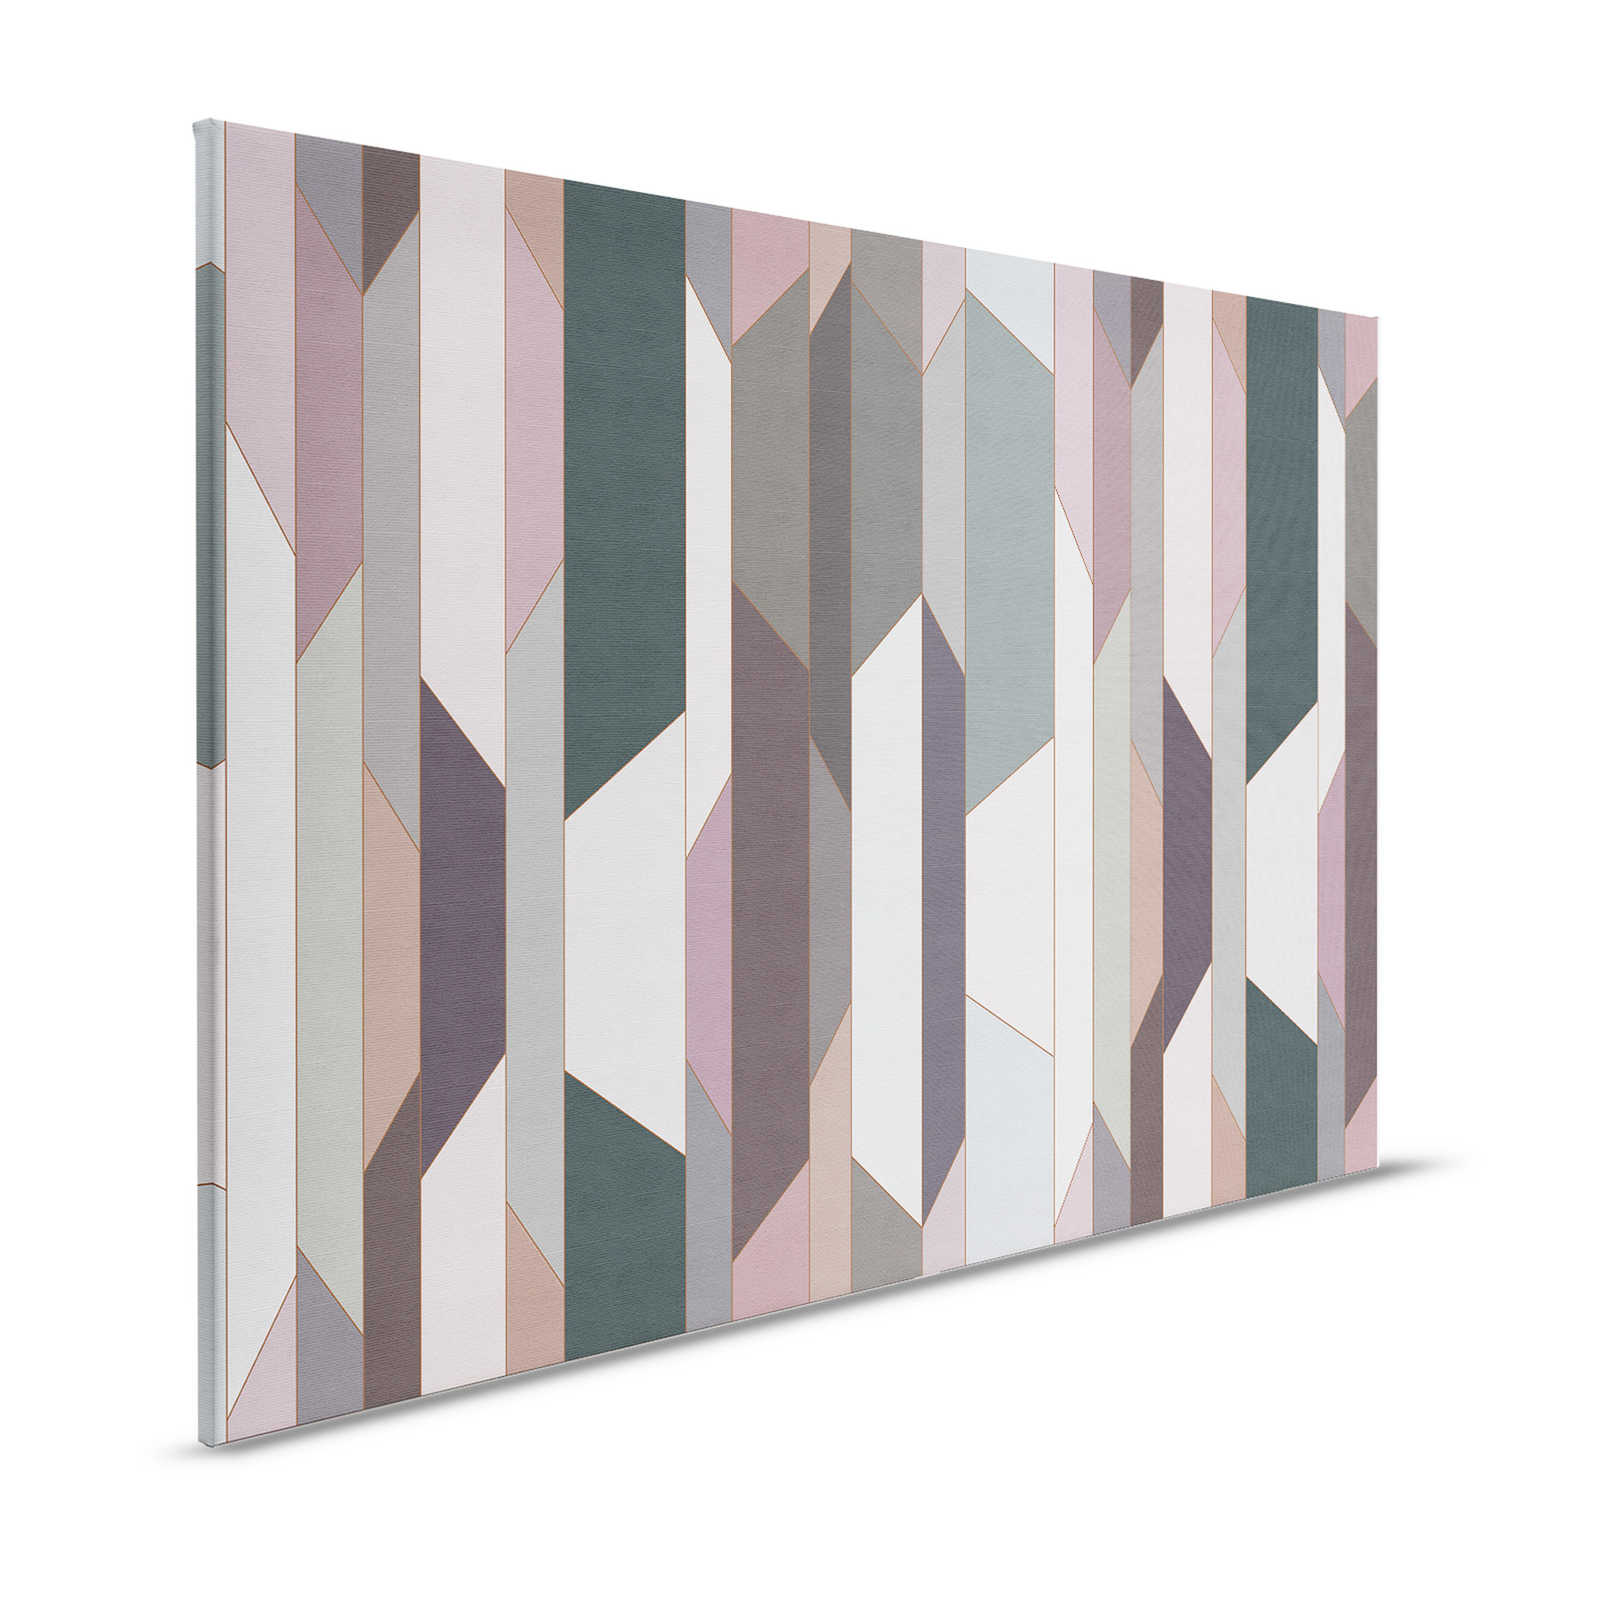 Vouw 2 - Canvas schilderij met geometrisch retro patroon - 1.20 m x 0.80 m
